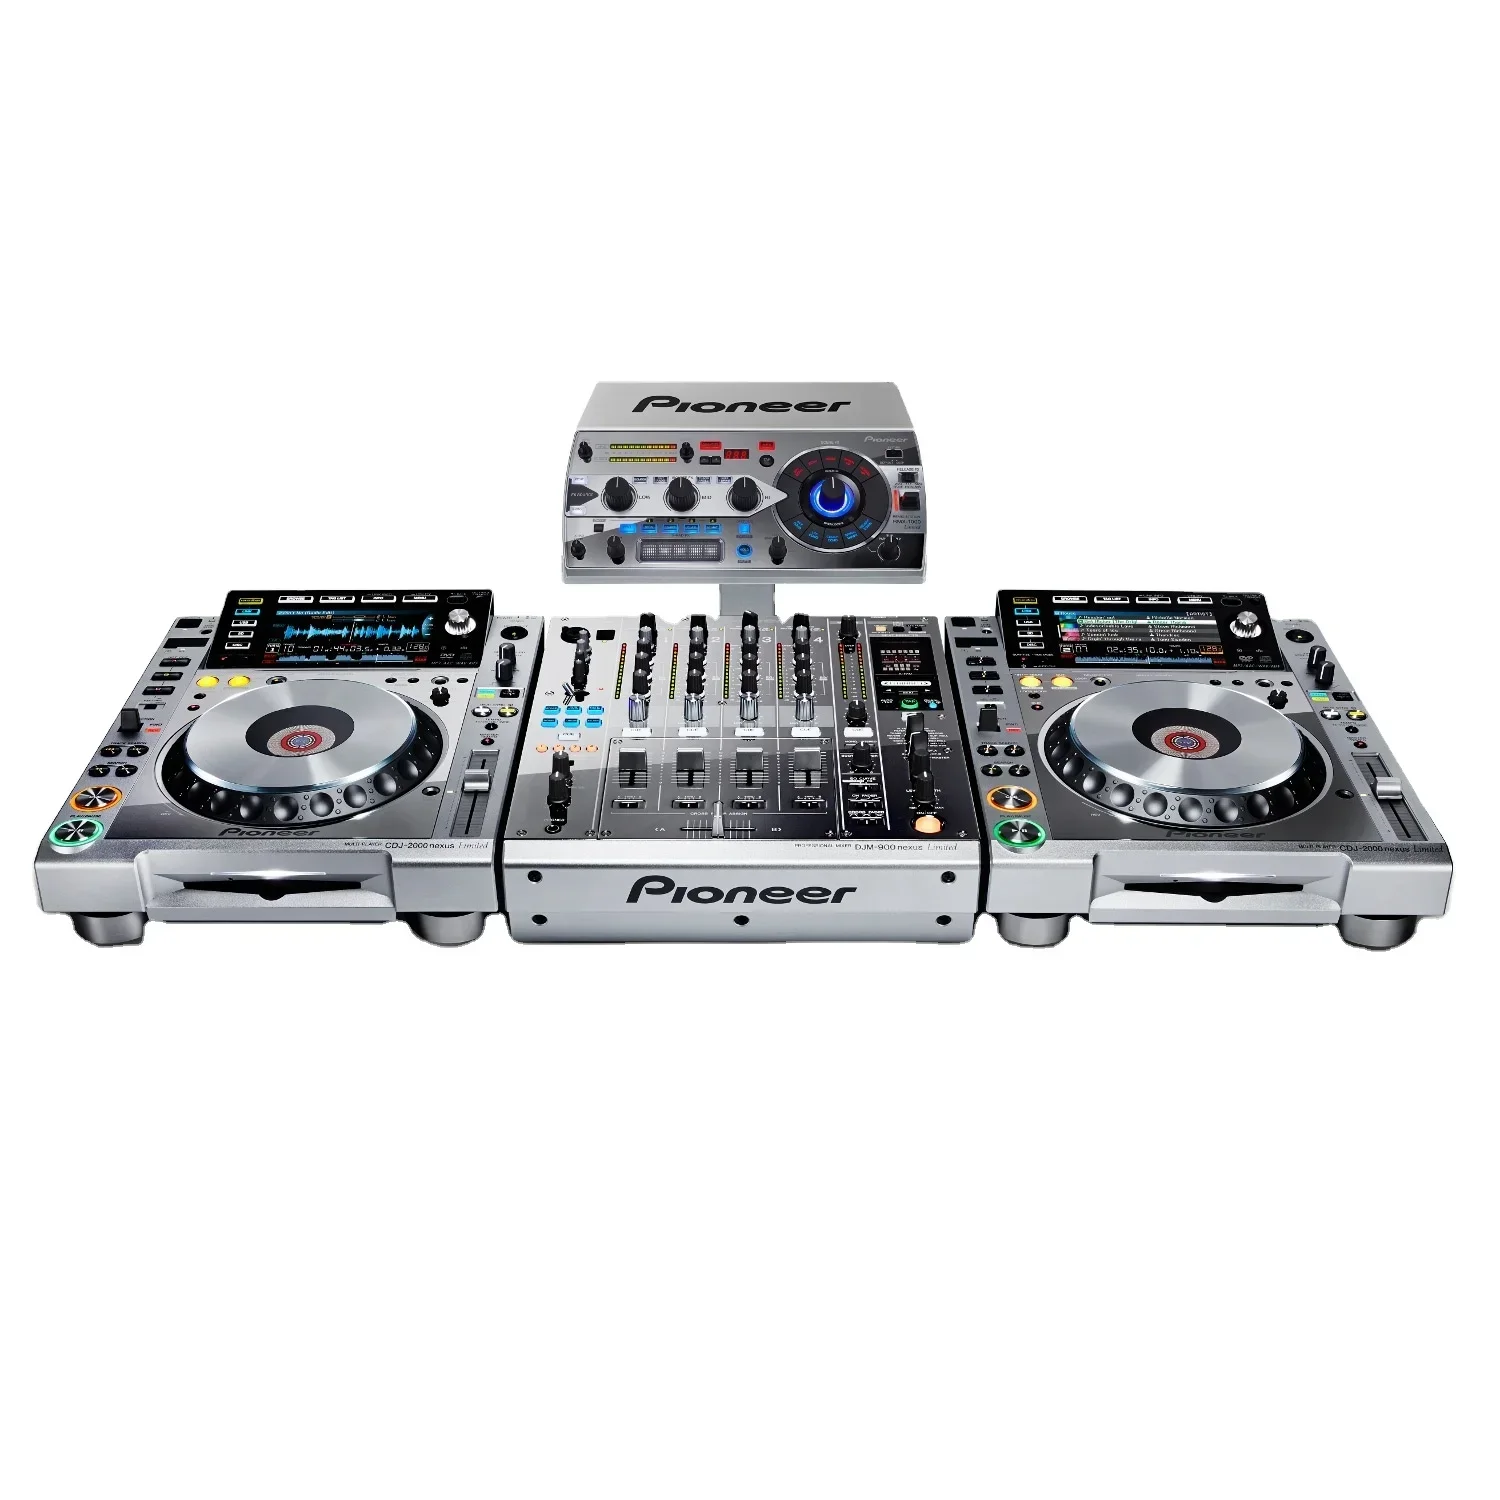 

SUMMER SALES DISCOUNT ON Brand New Pio-neers DJ XDJ-RX2 Professional DJ System Mixer